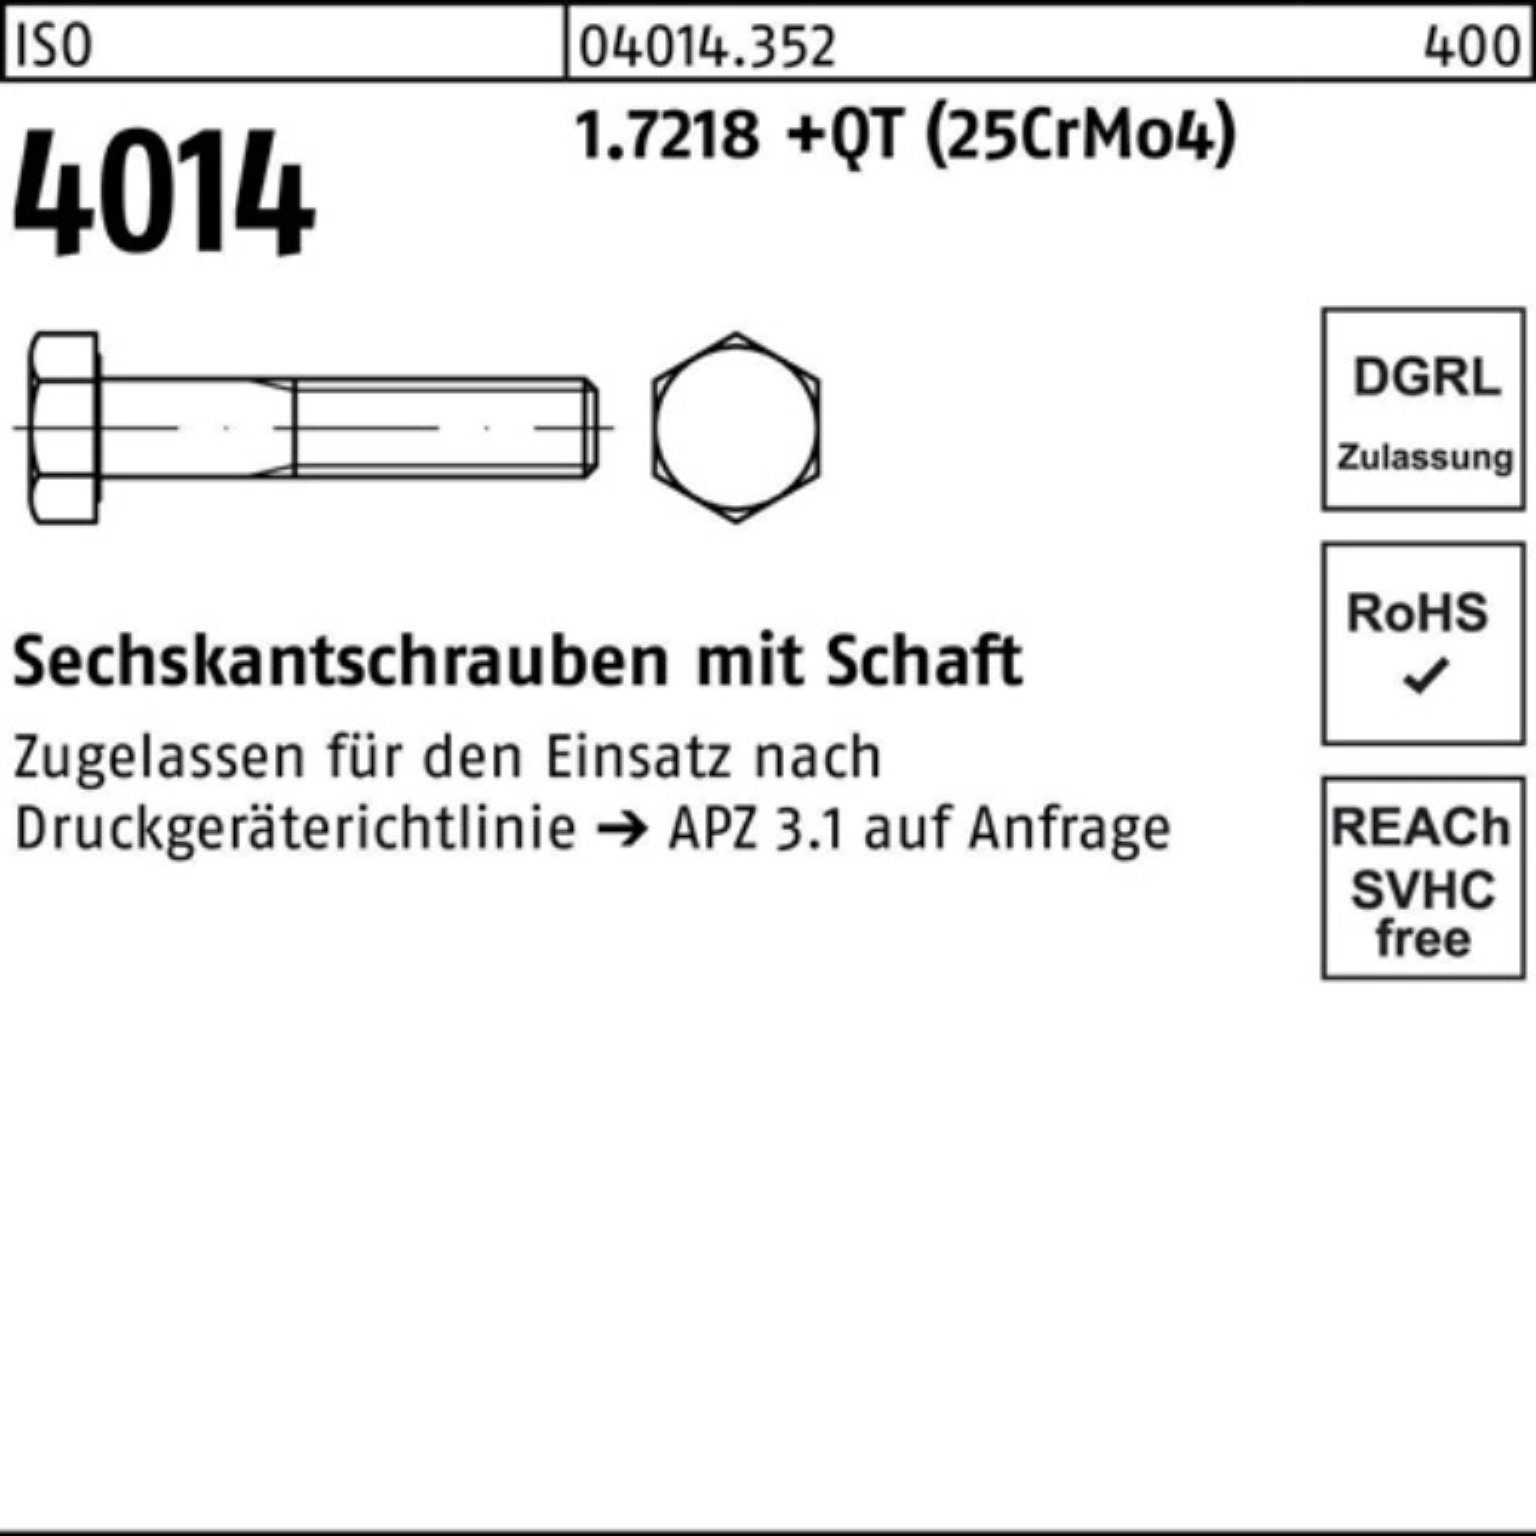 Willkommen in unserem Geschäft! Bufab Sechskantschraube 100er Pack Sechskantschraube Schaft 4014 +QT ISO 210 (25Cr 1.7218 M24x